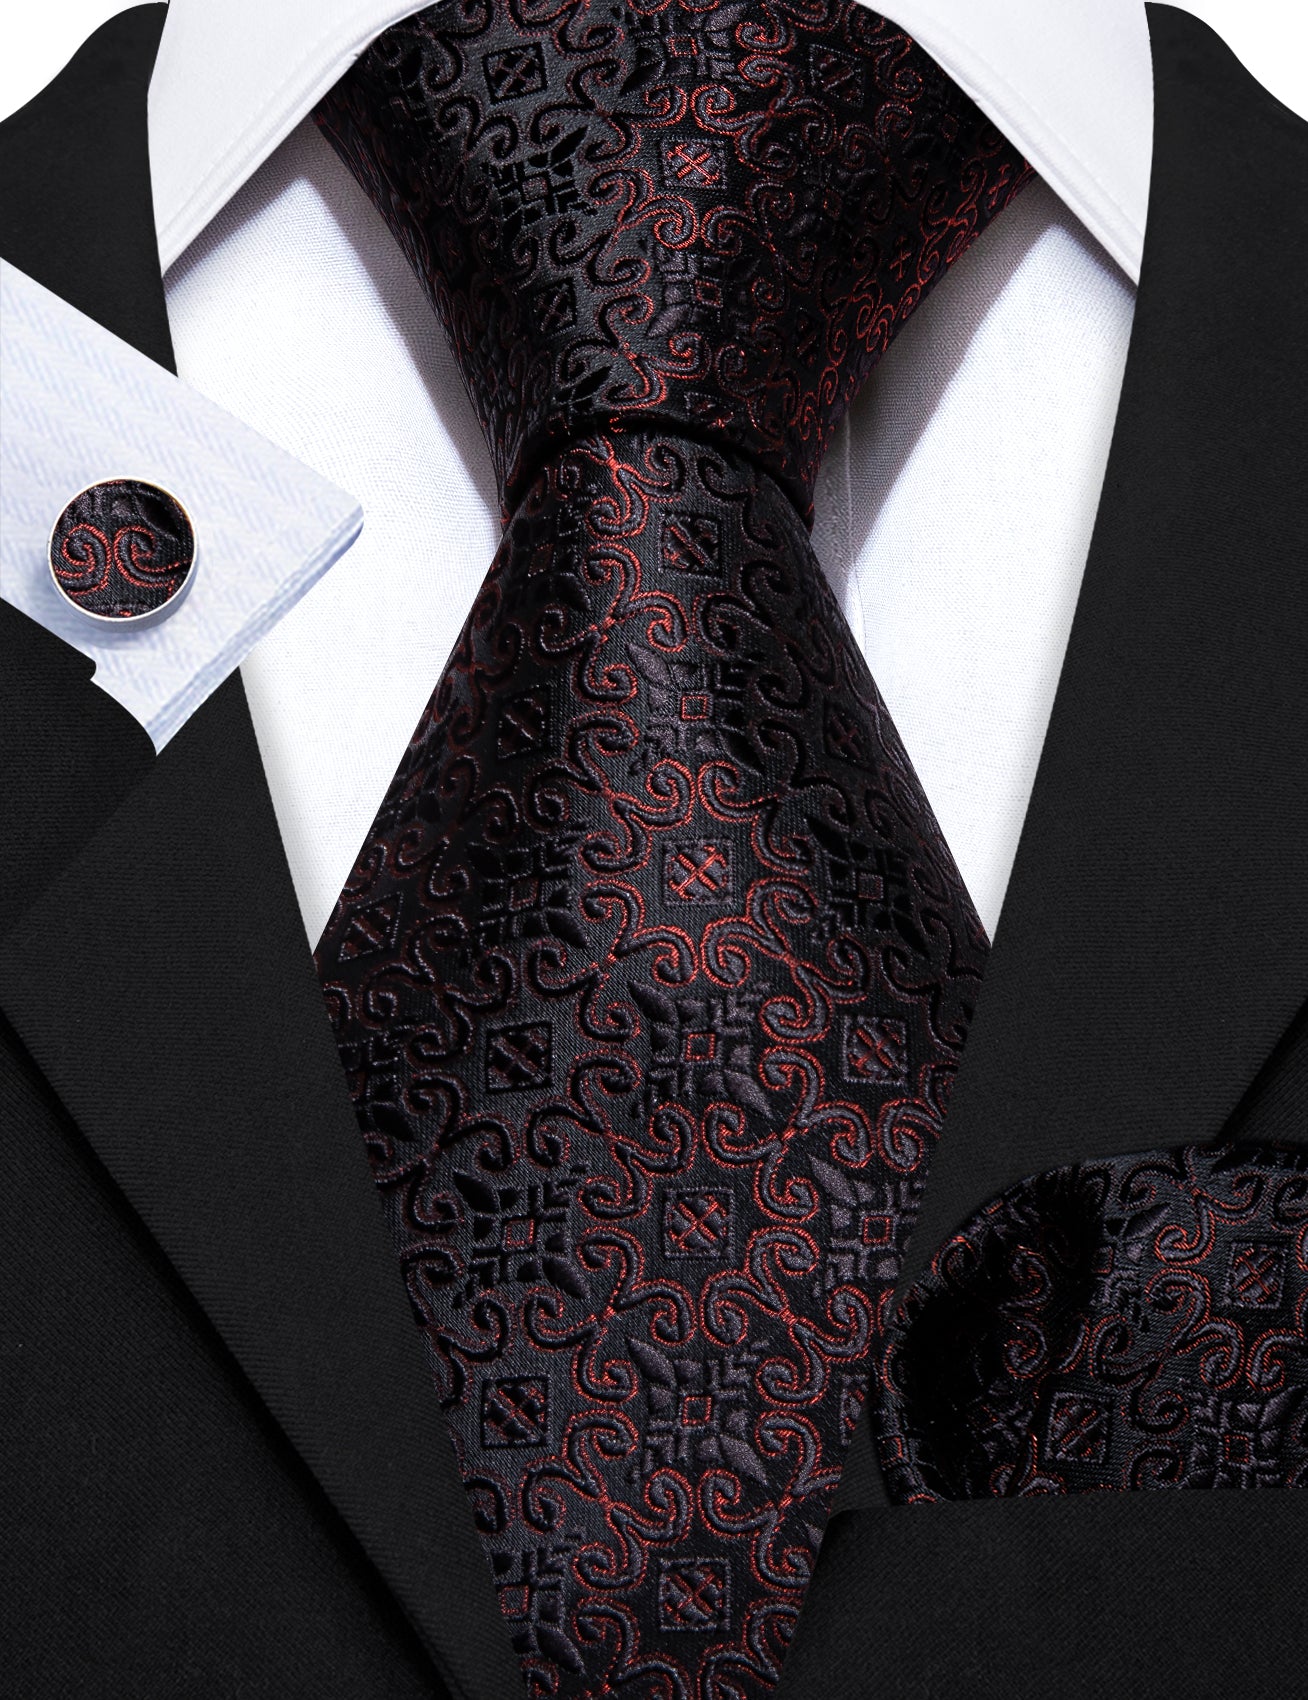 Fashion Black Red Floral Silk Tie Handkerchief Cufflinks Set